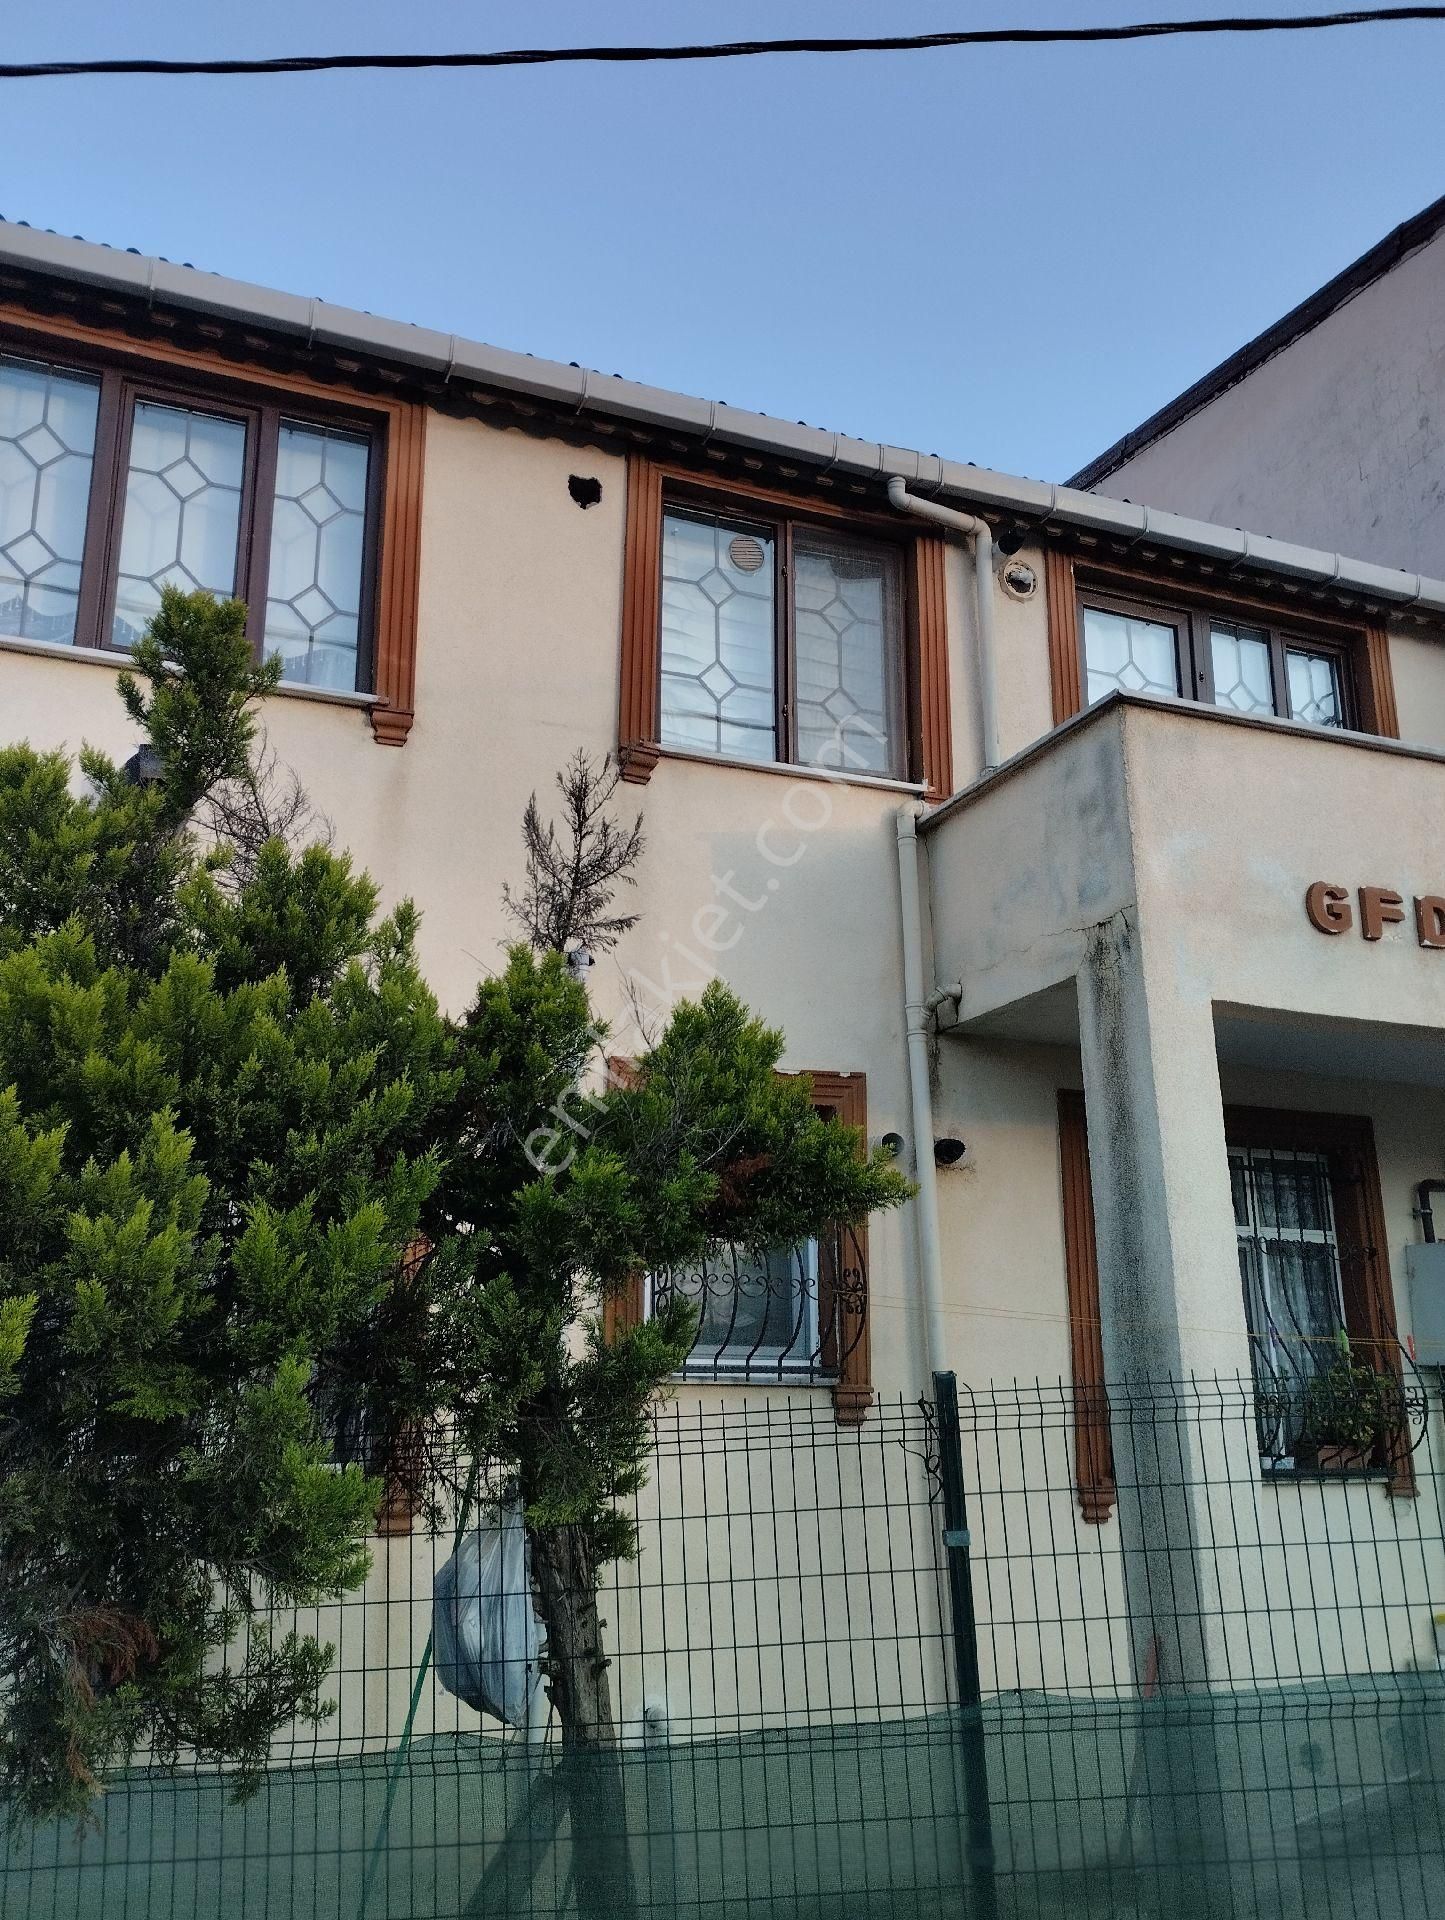 Arnavutköy Taşoluk Satılık Müstakil Ev SATILIK VİLLA TİPİ MÜSTAKİL EV Pazarlık olur